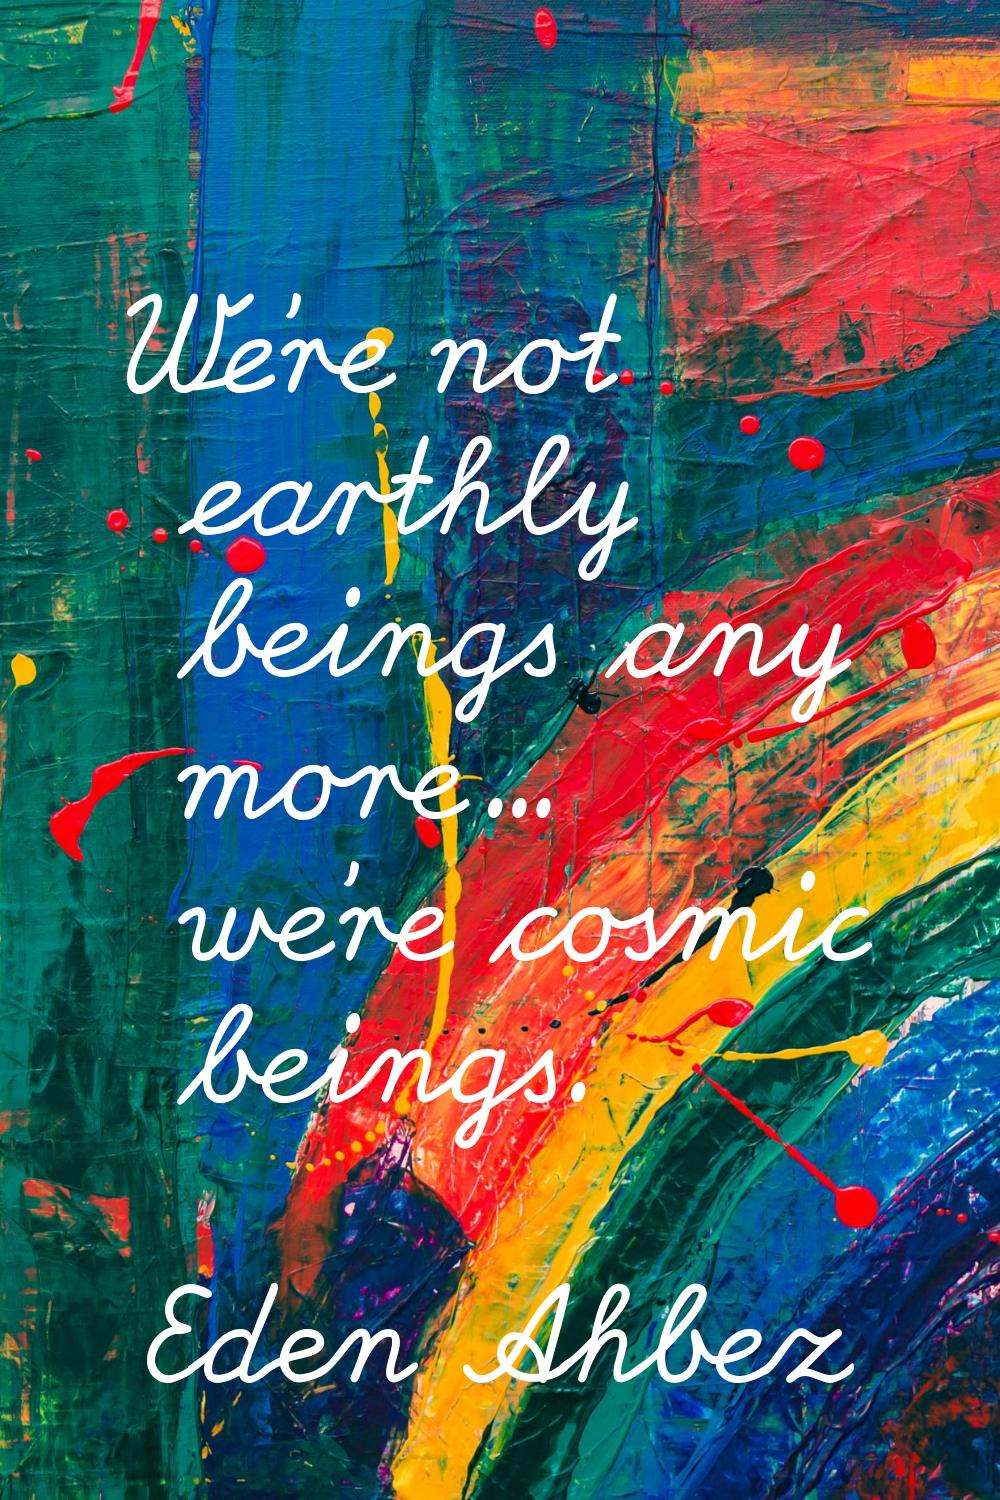 We're not earthly beings any more... we're cosmic beings.